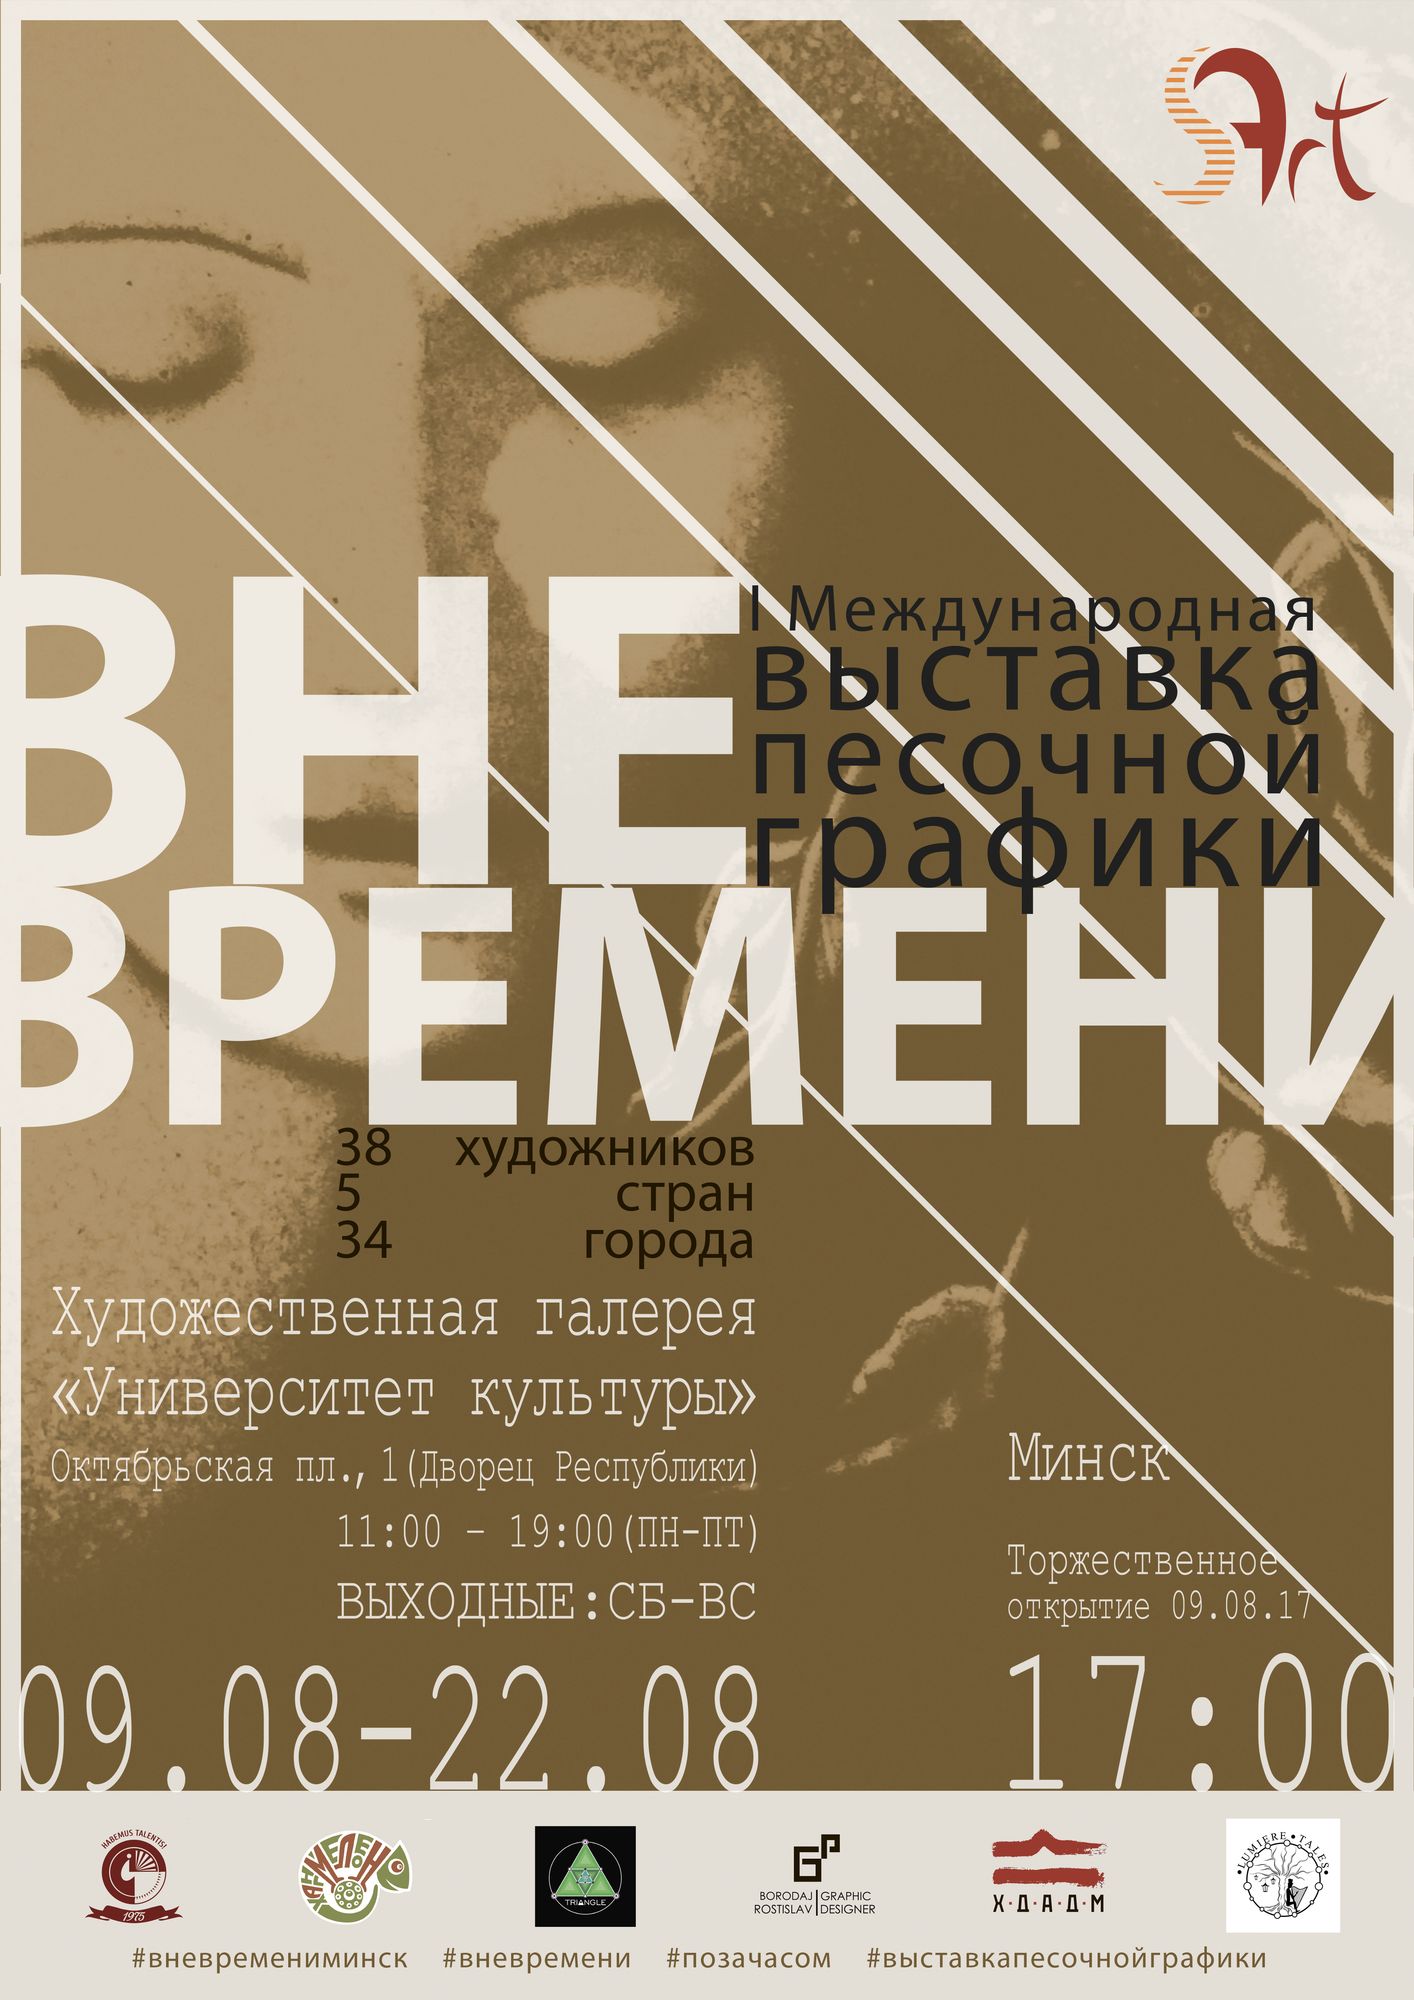 международная выставка песочной графики «ВНЕ ВРЕМЕНИ» в Минске